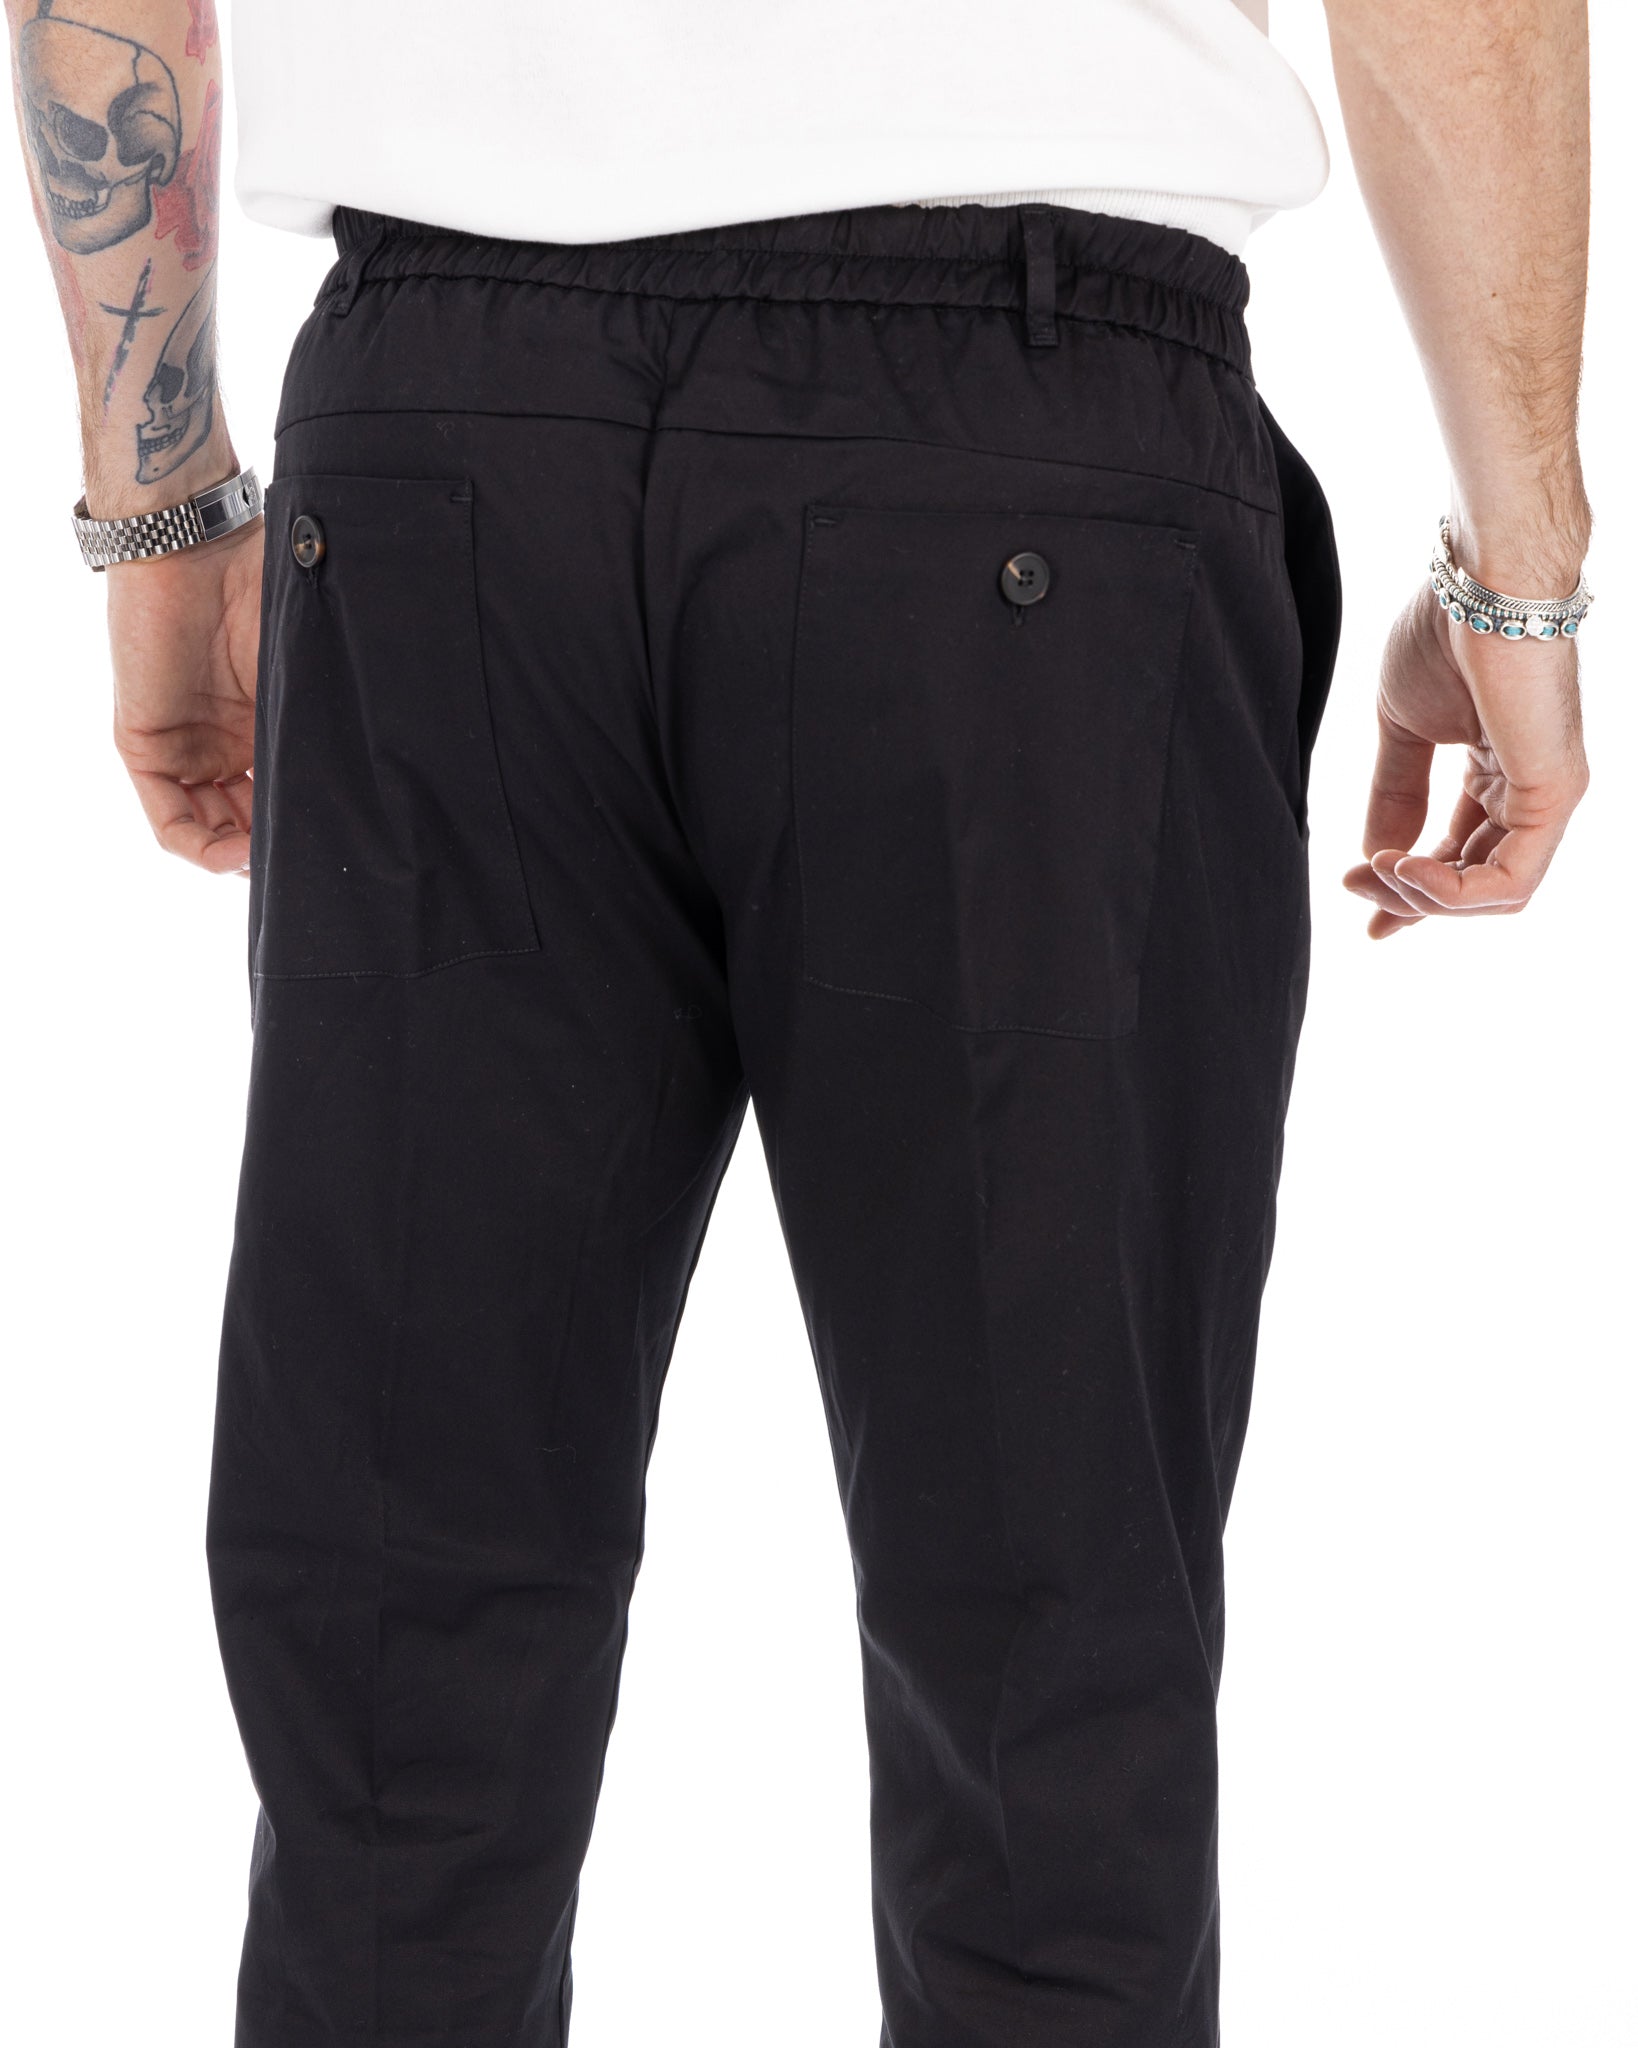 Elder - pantalone capri nero in cotone estivo